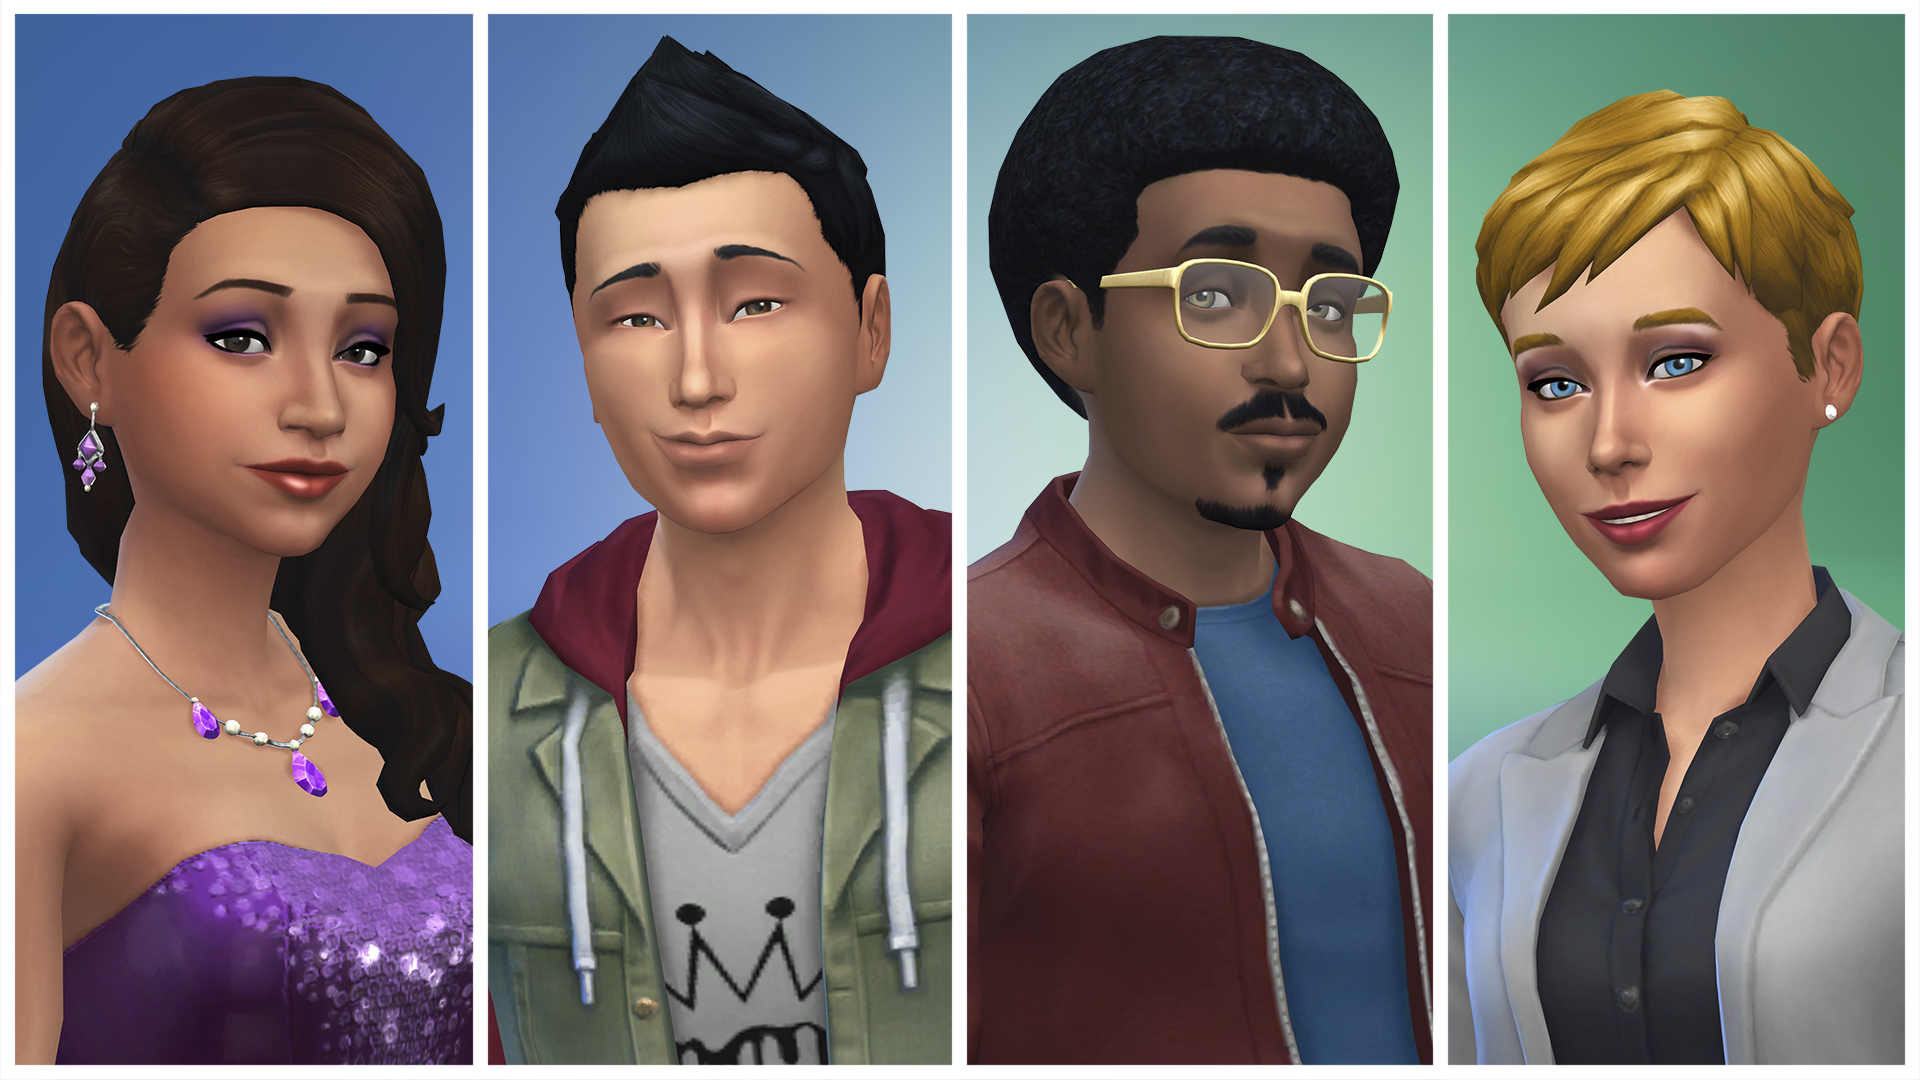 The Sims 4 – снимок экрана